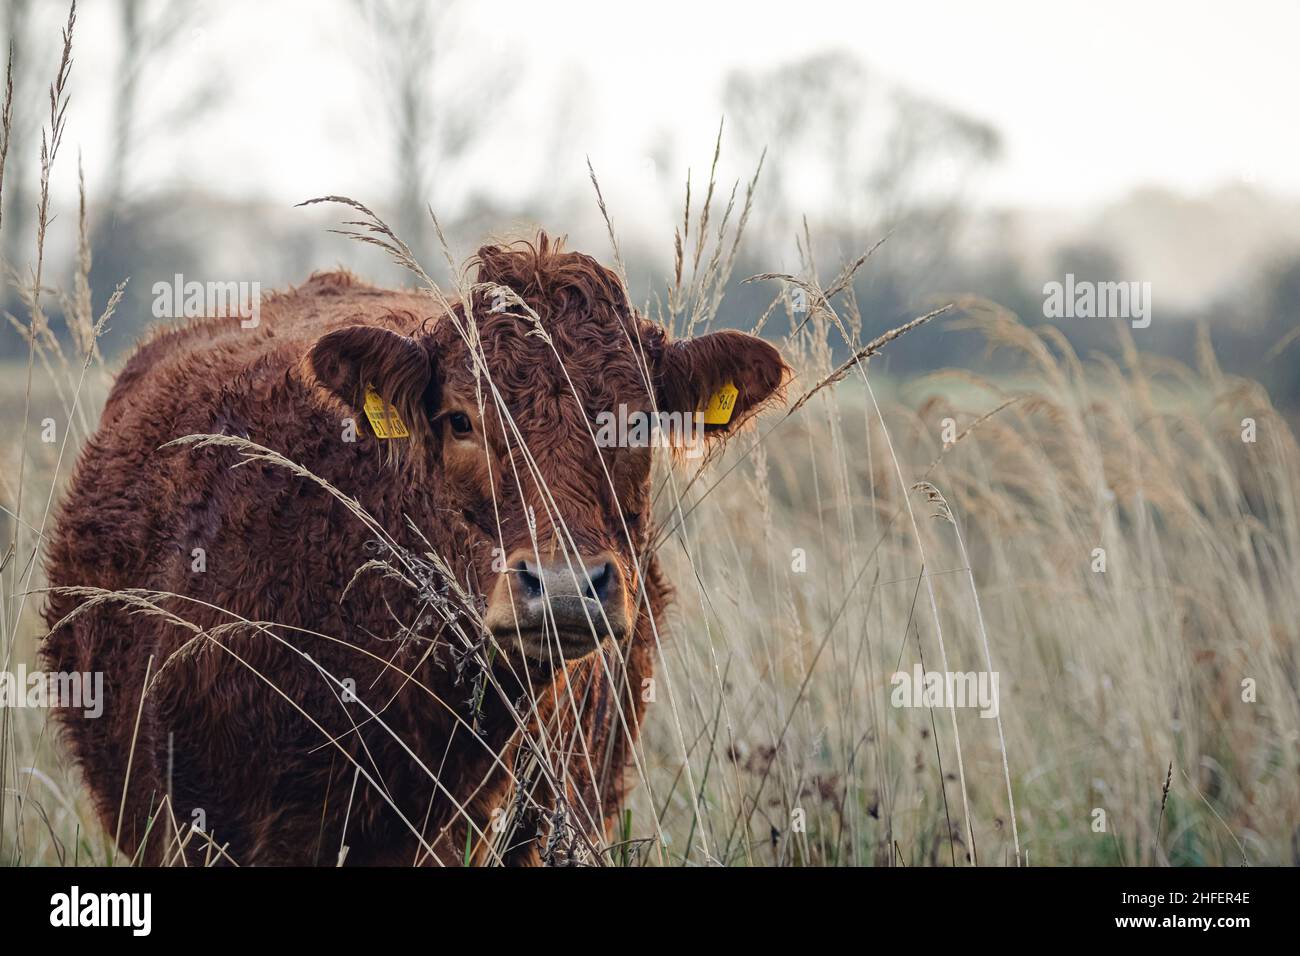 Kuh auf einer Weide im regen Foto Stock